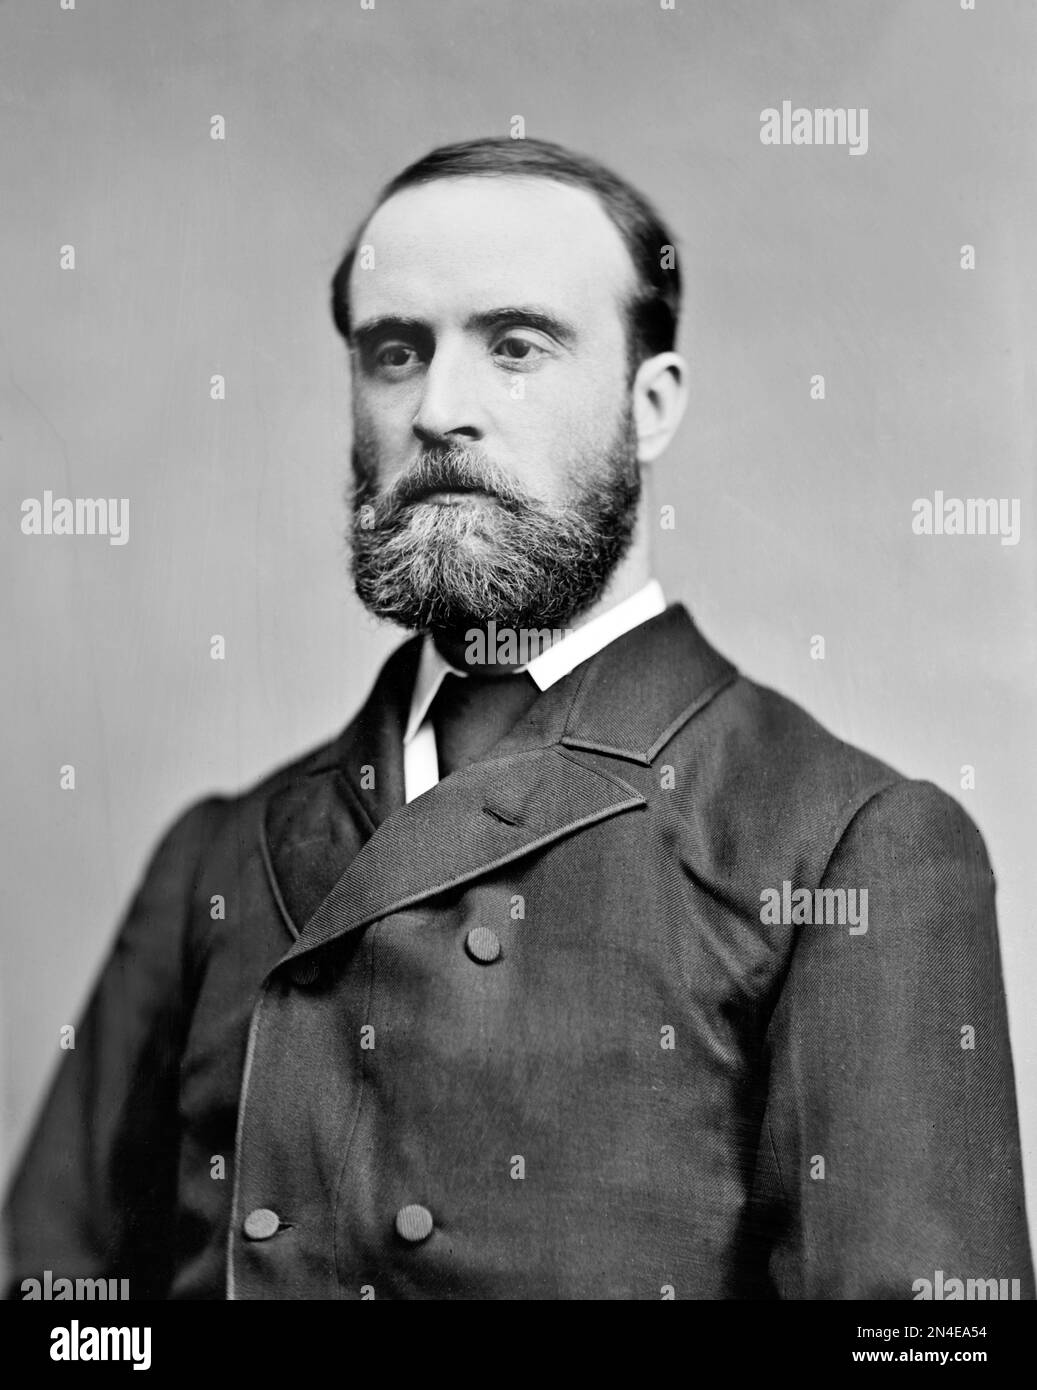 Charles Stewart Parnell. Ritratto del politico nazionalista irlandese, Charles Stewart Parnell (1846-1891) di Mathew Brady, 1870-80 Foto Stock